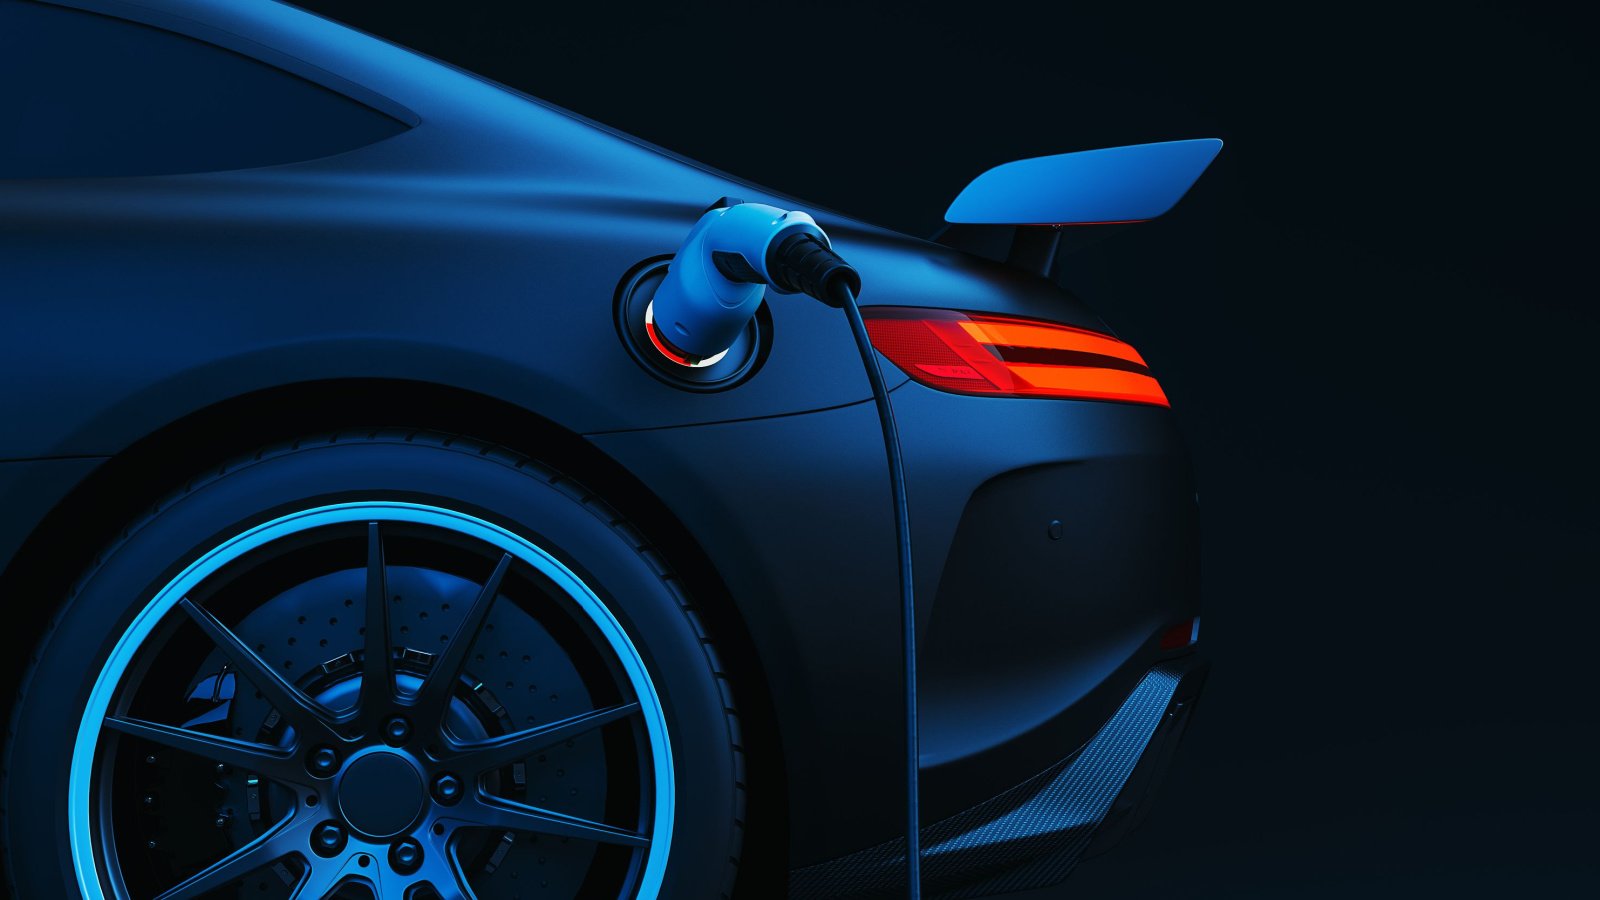 暗い黒の背景で充電している青い電気自動車 (EV) のイラスト